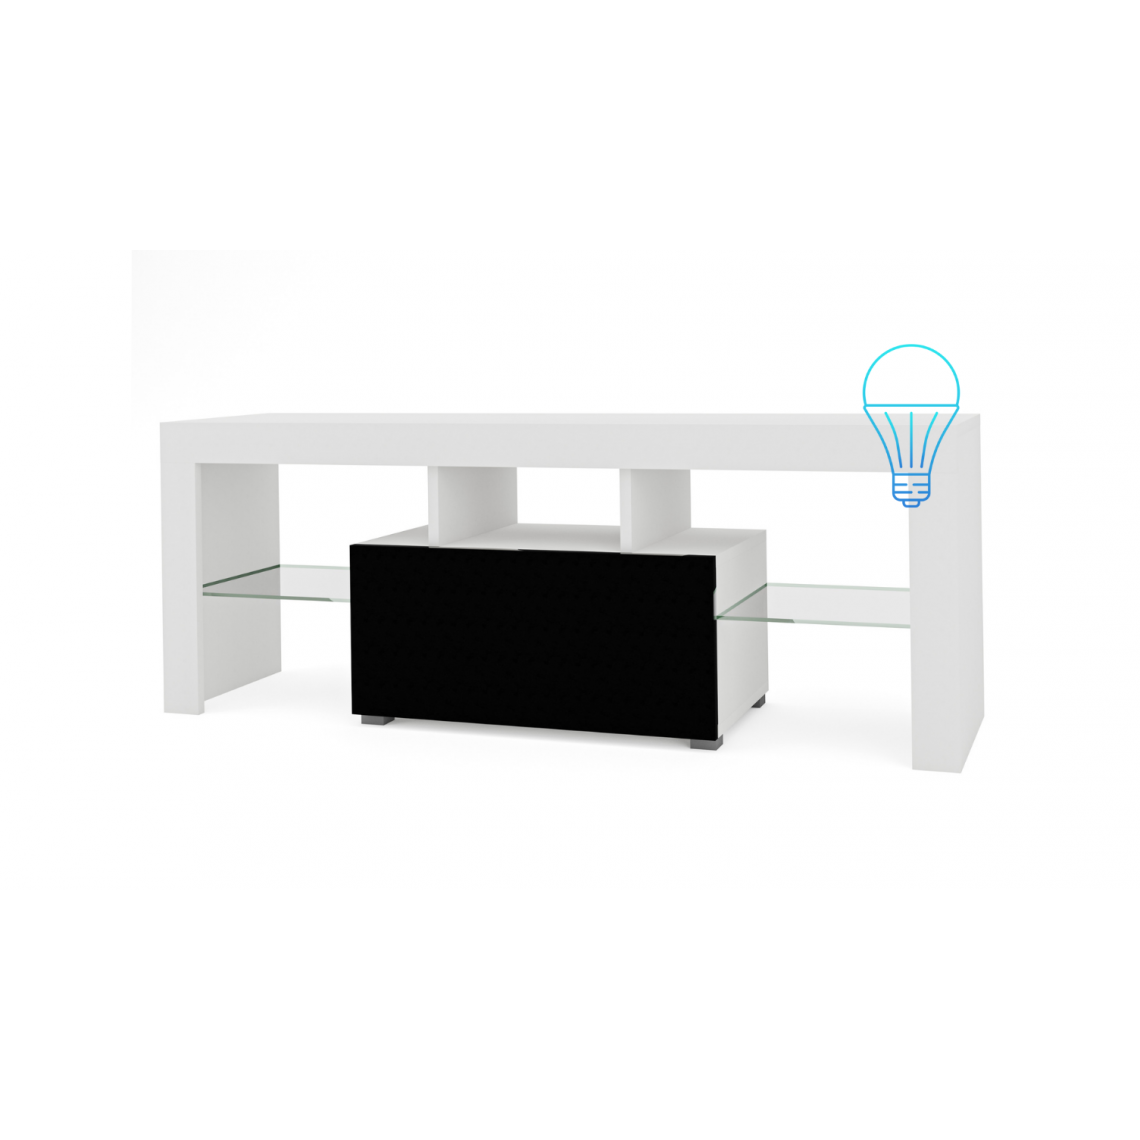 3xeliving - 3xEliving Meuble TV avec rangement SELMA 130 cm avec LED, Blanc / Noir Brillant, Largeur: 130cm, Profondeur: 35cm, Hauteur: 49 cm. - Meubles TV, Hi-Fi